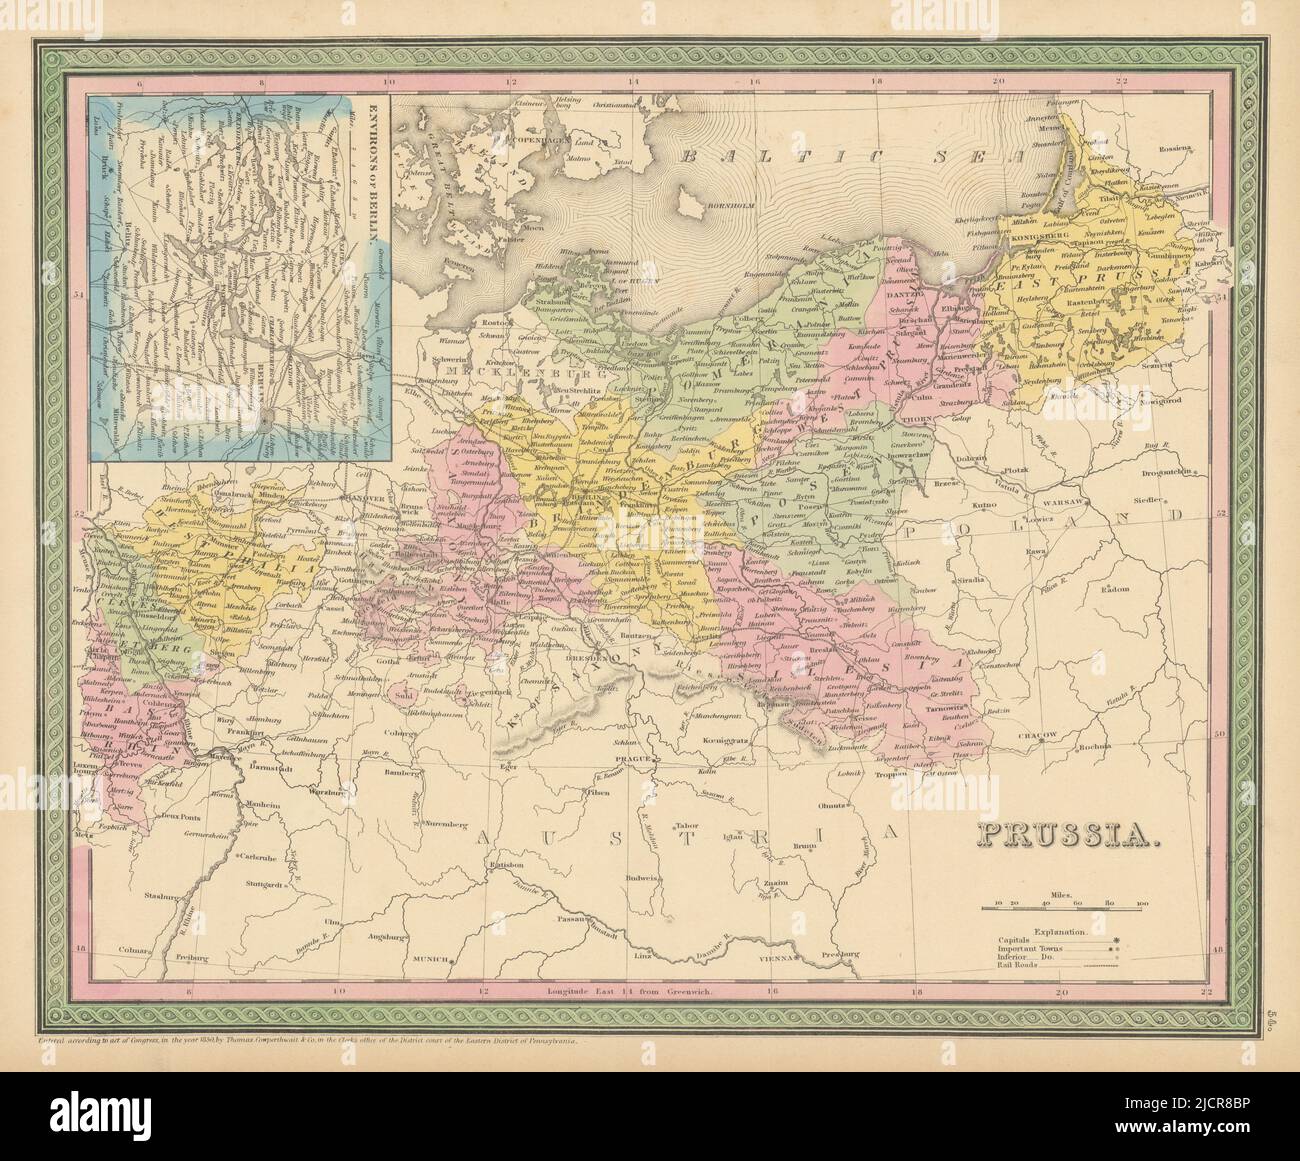 Prusia. Alrededores de Berlín. Alemania y Polonia. THOMAS, COWPERTHWAIT 1852 mapa antiguo Foto de stock